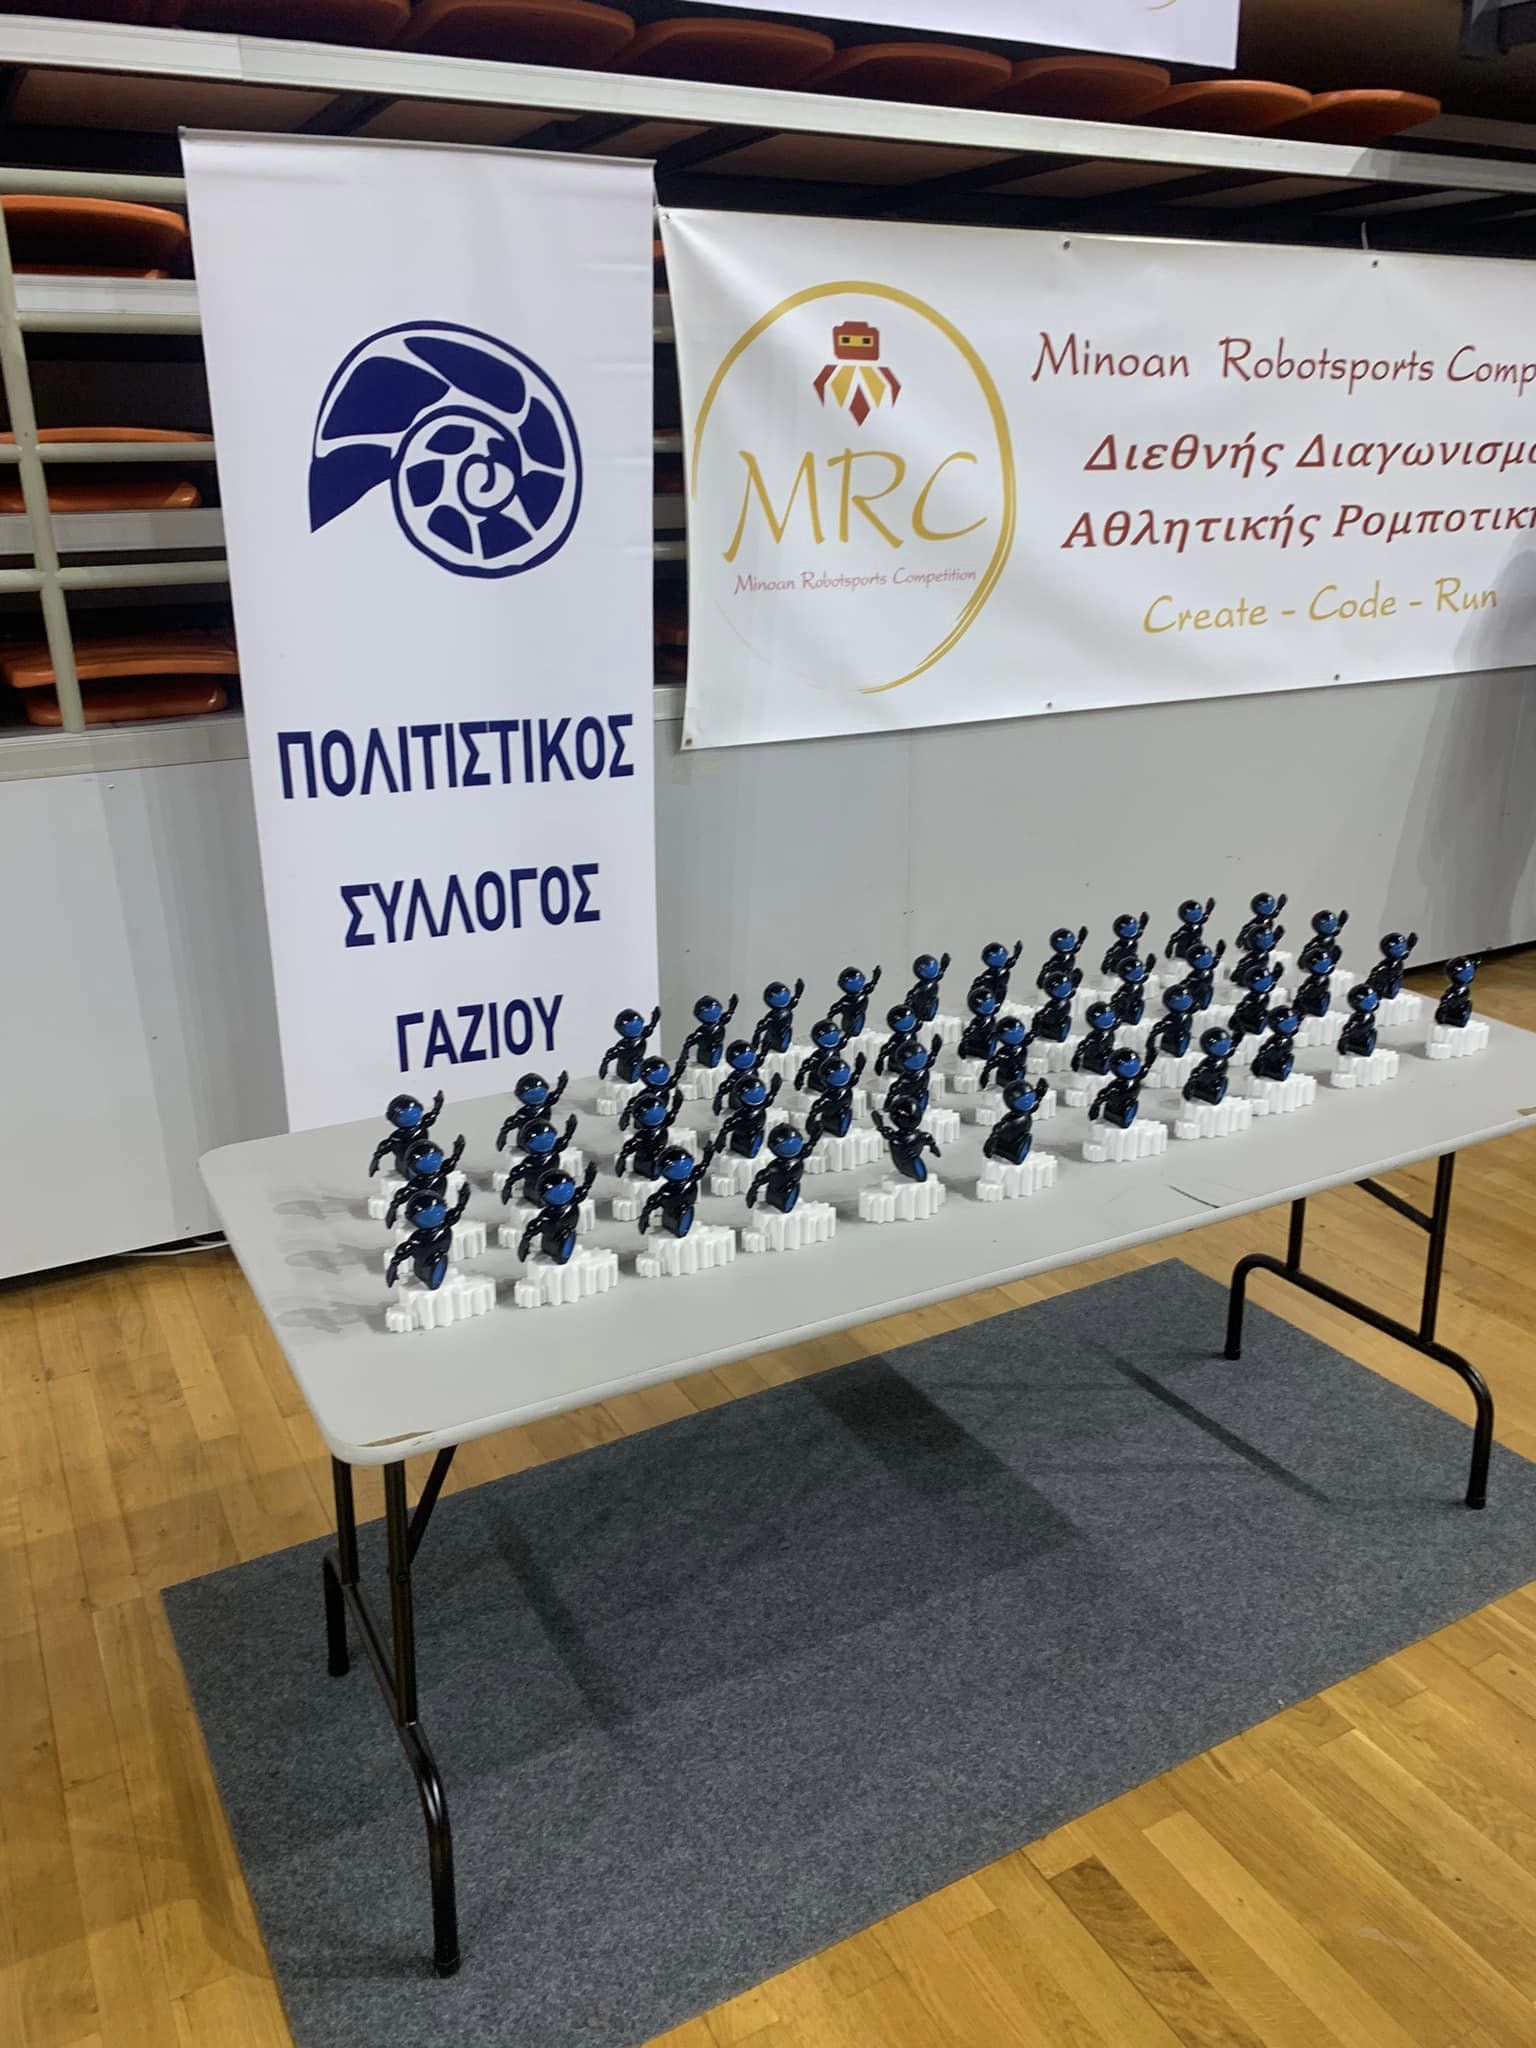 Τελετή έναρξης της Ολυμπιάδας Αθλητικής Ρομποτικής "Minoan Robotsports Competition Global Olympiad" admin